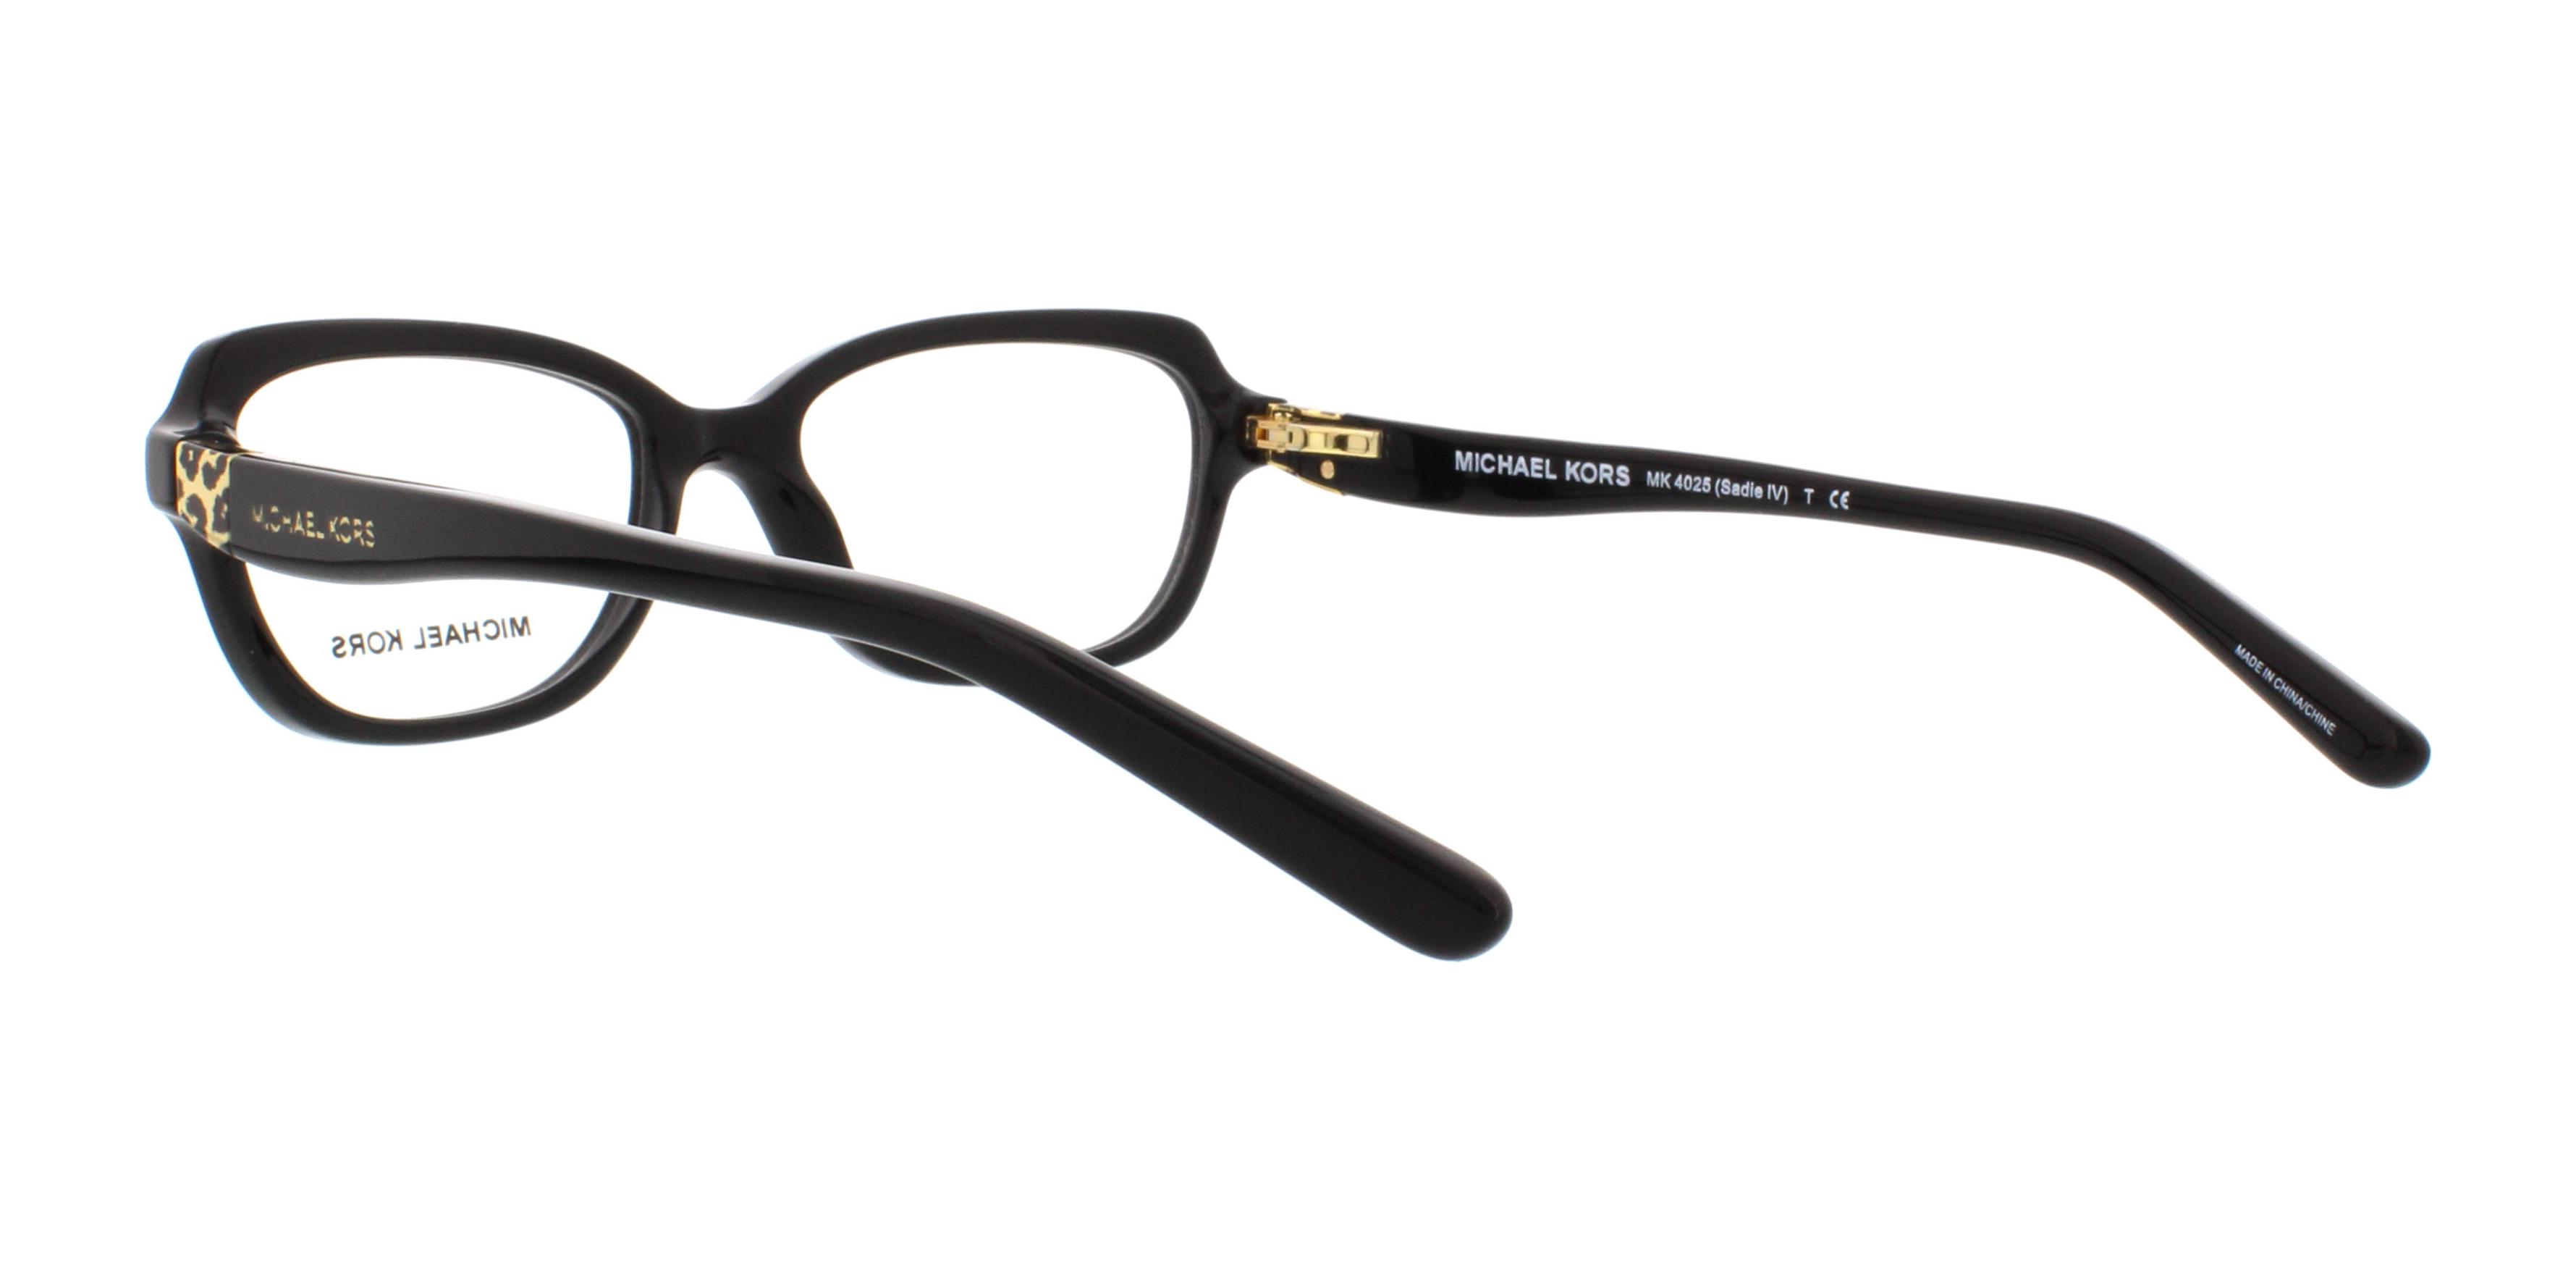 Designer Frames Outlet. Michael Kors Eyeglasses MK4025 Sadie IV